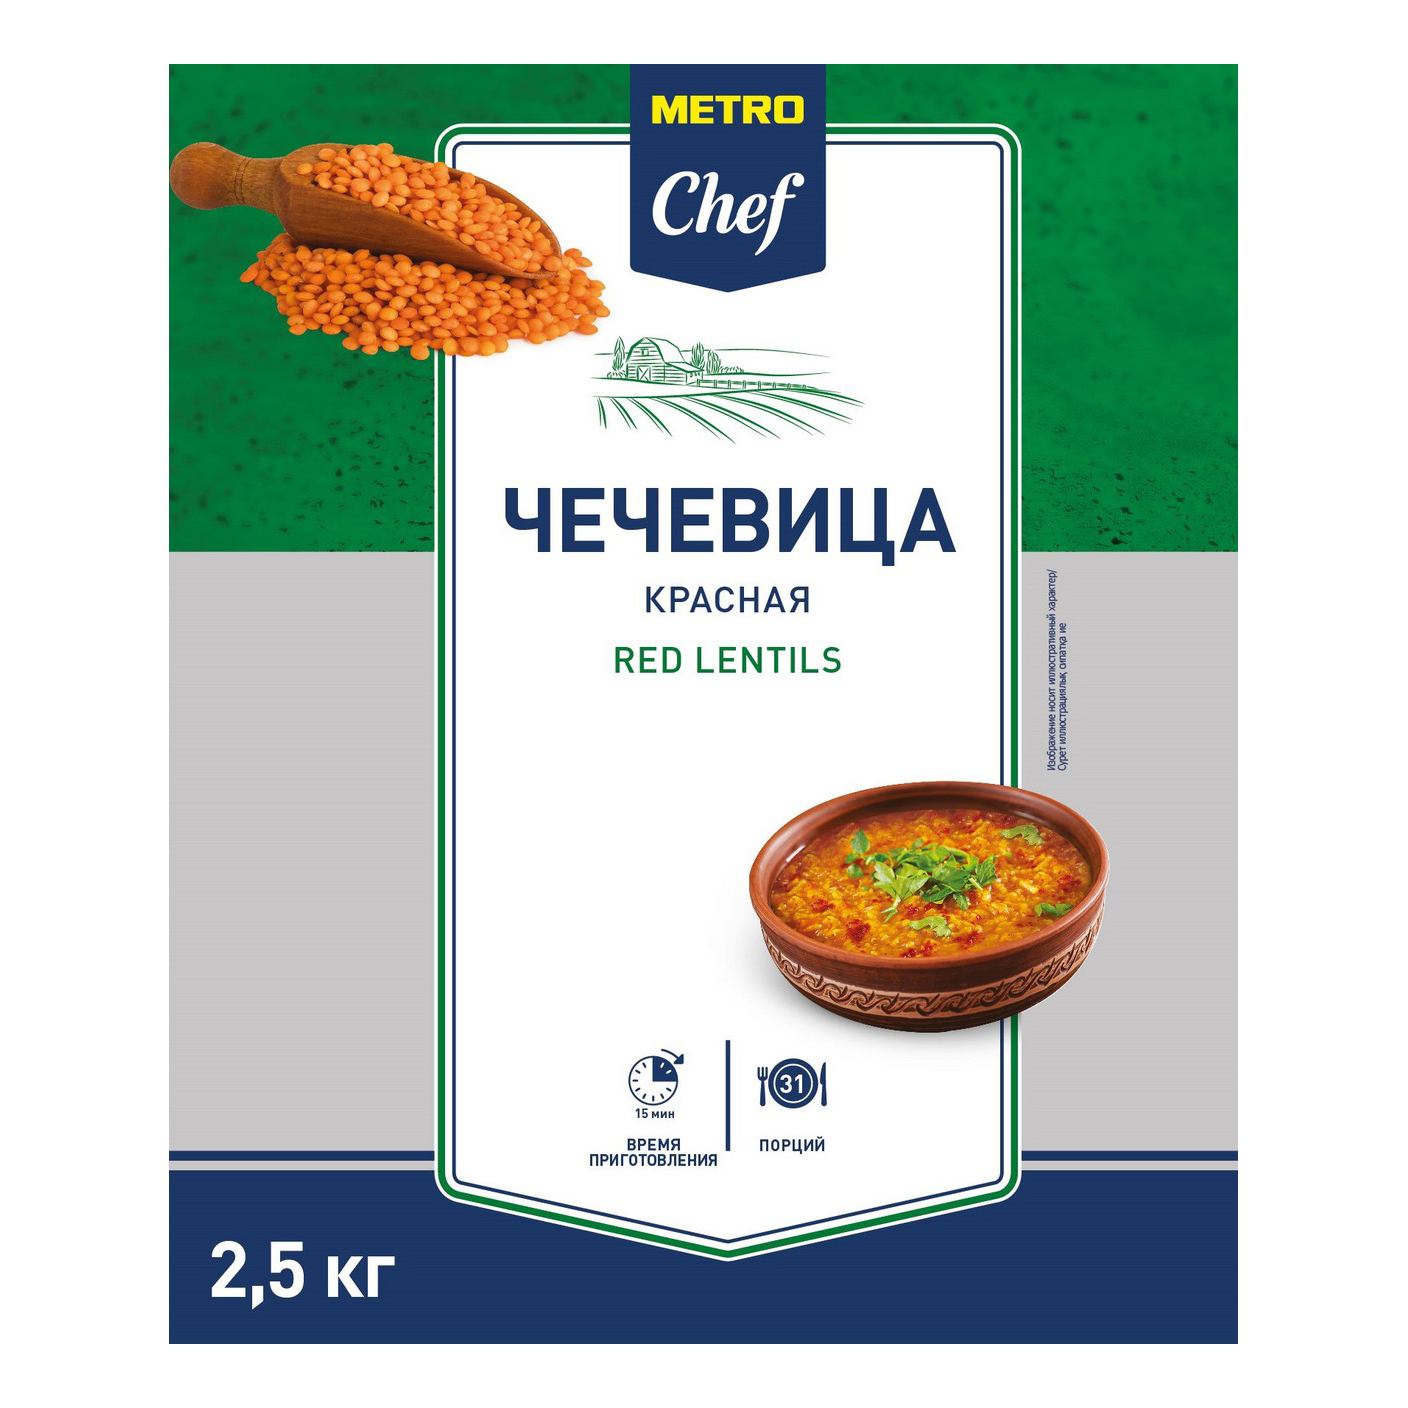 Чечевица Metro Chef красная цельная 2,5 кг